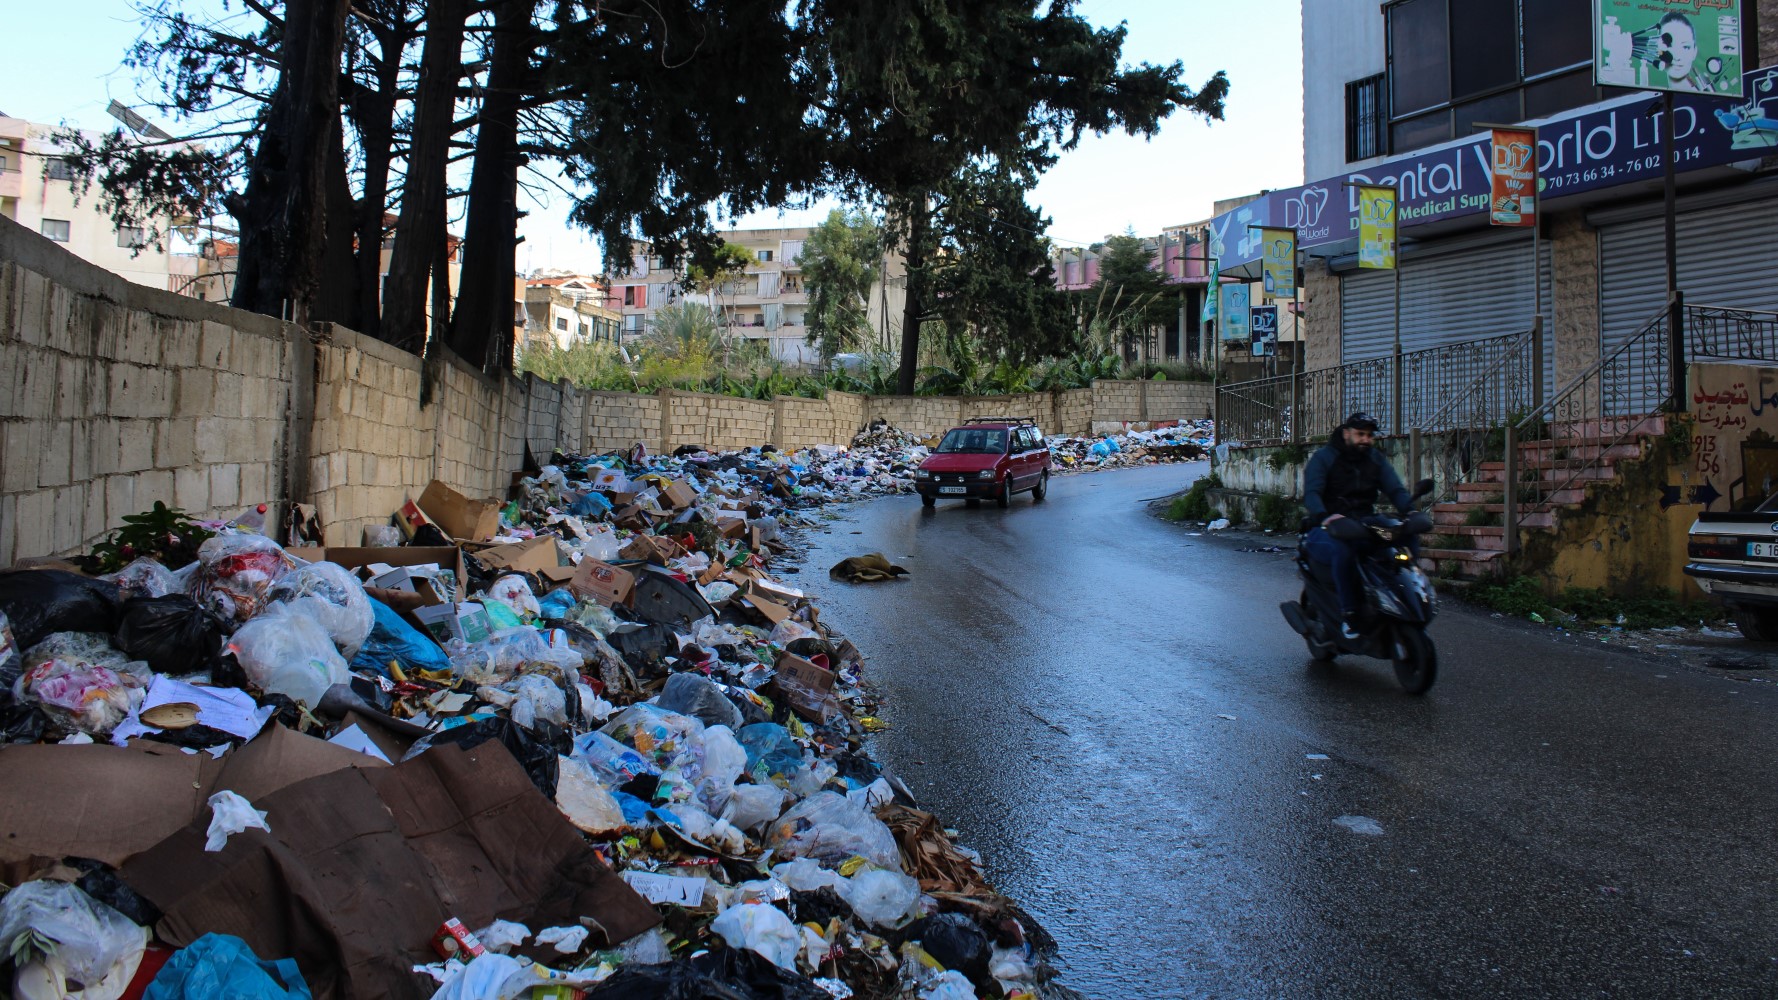 L’État libanais peine à fournir des services tels que la collecte des ordures dans un contexte de crise financière (Hanna Davis/MEE)